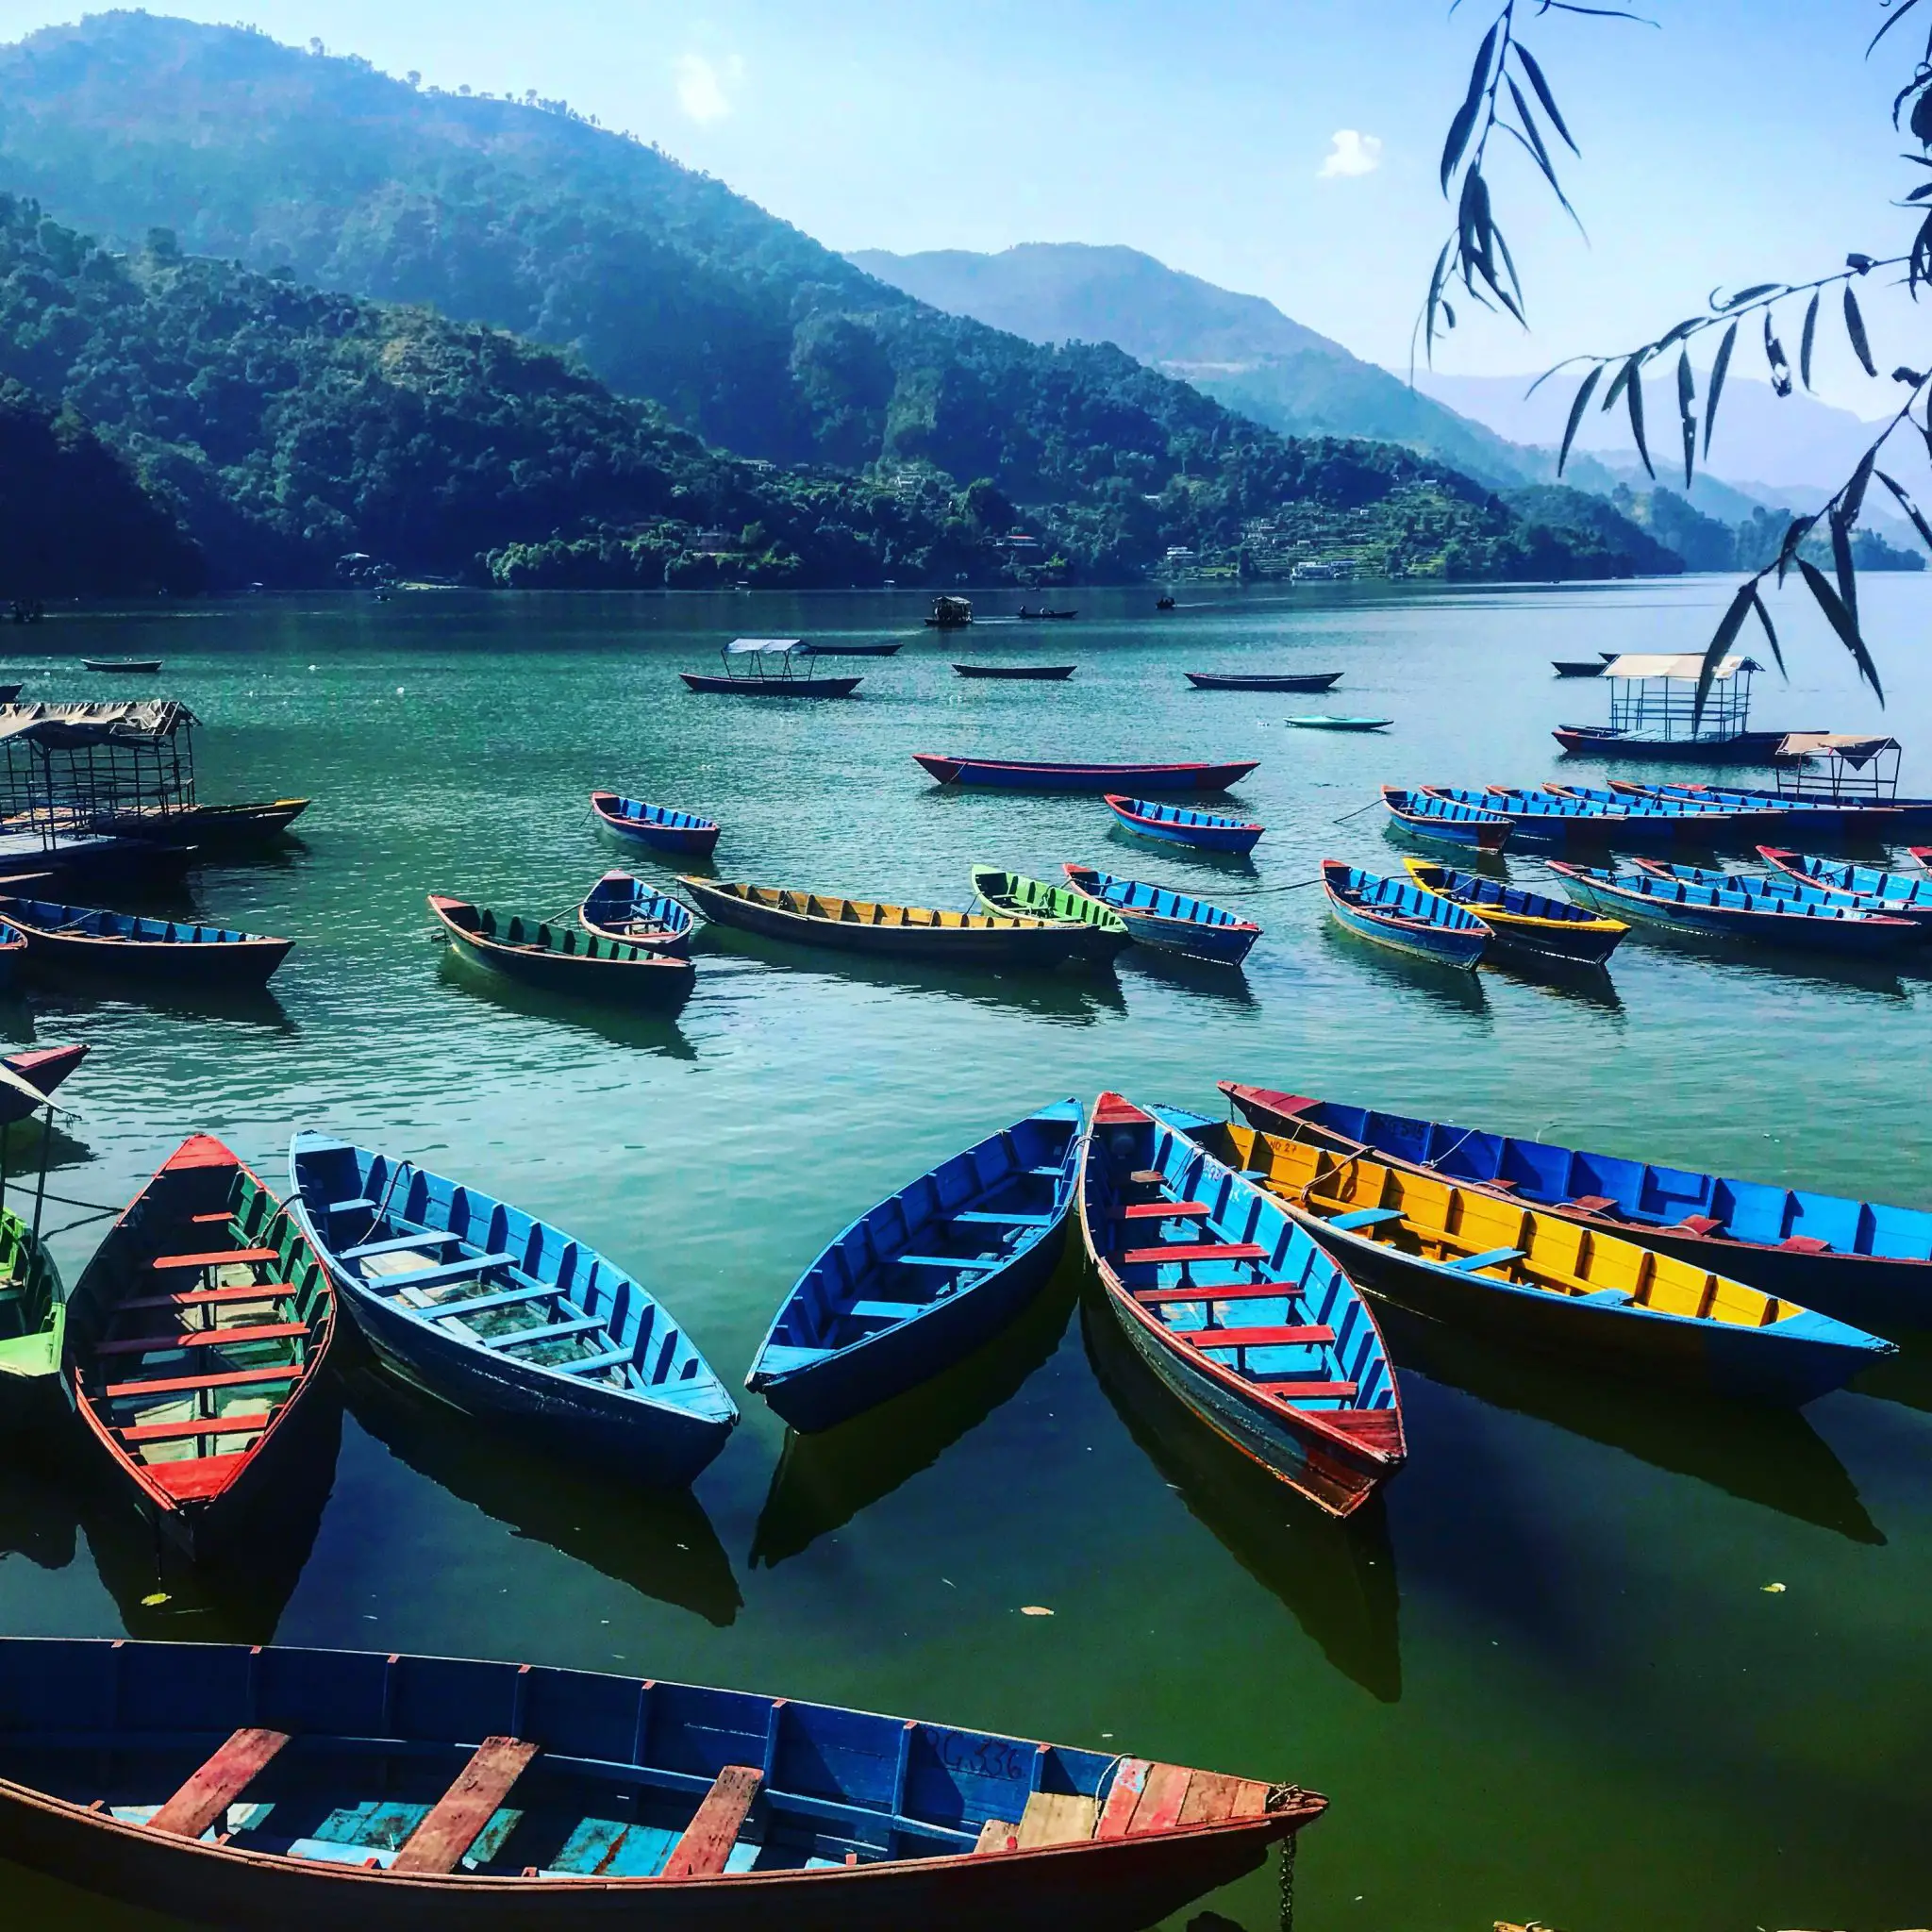 Boats on Lake Phewa in Pokhara, Nepal